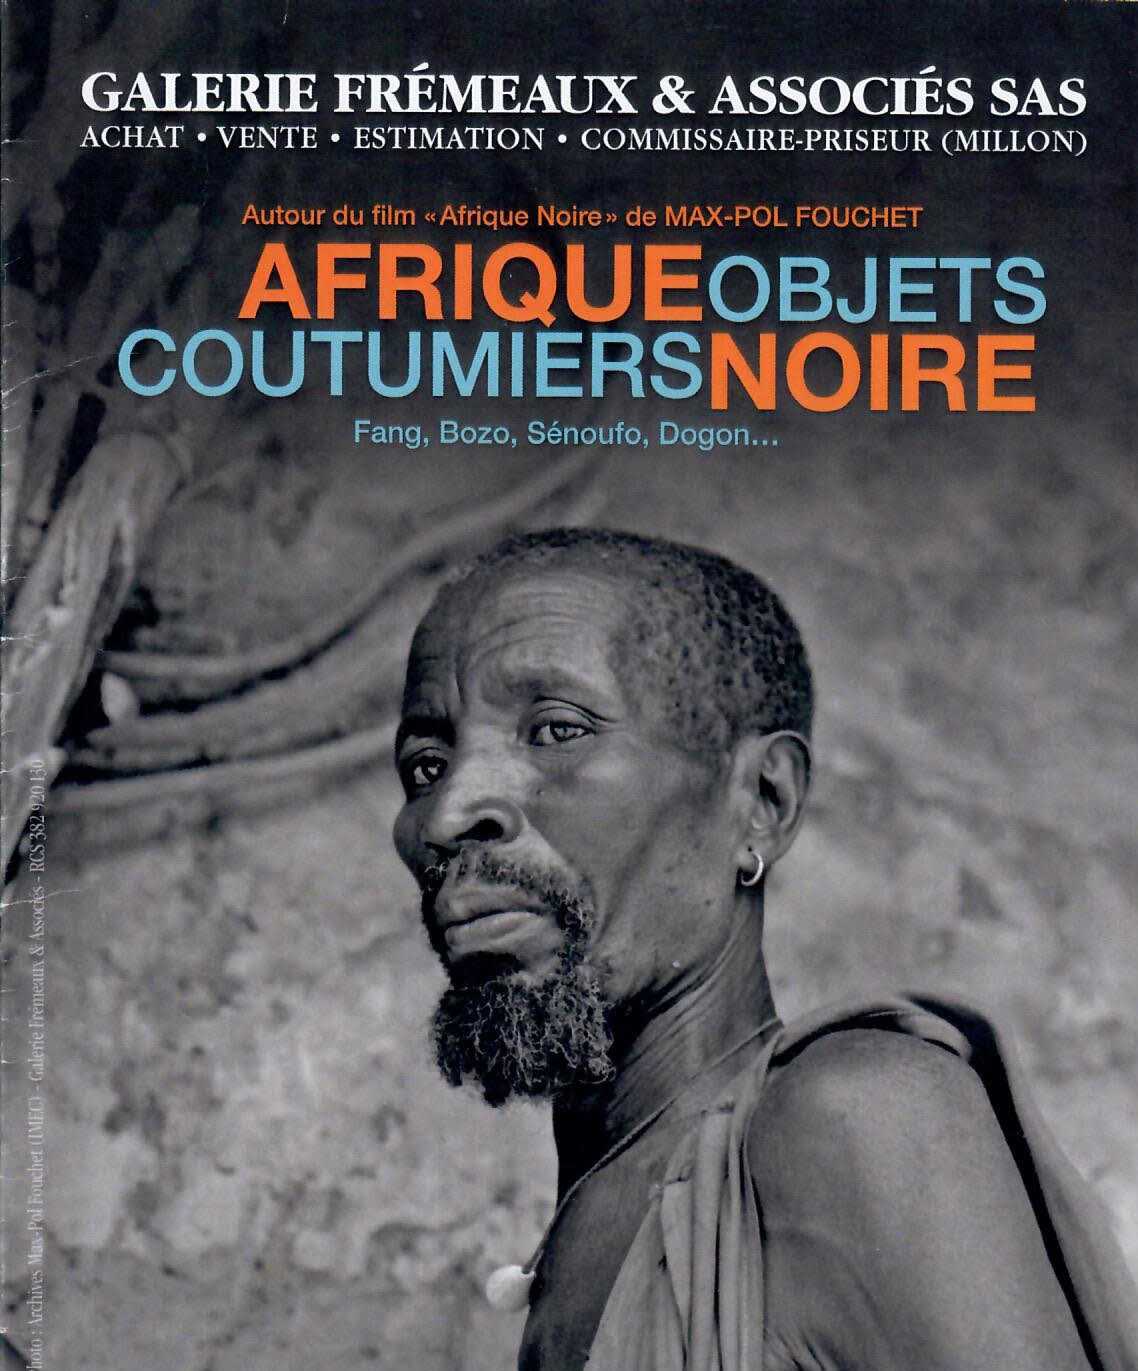 Réédition du film « Afrique noire » de Max-Pol Fouchet : un regard bienveillant et admiratif sur l'Afrique